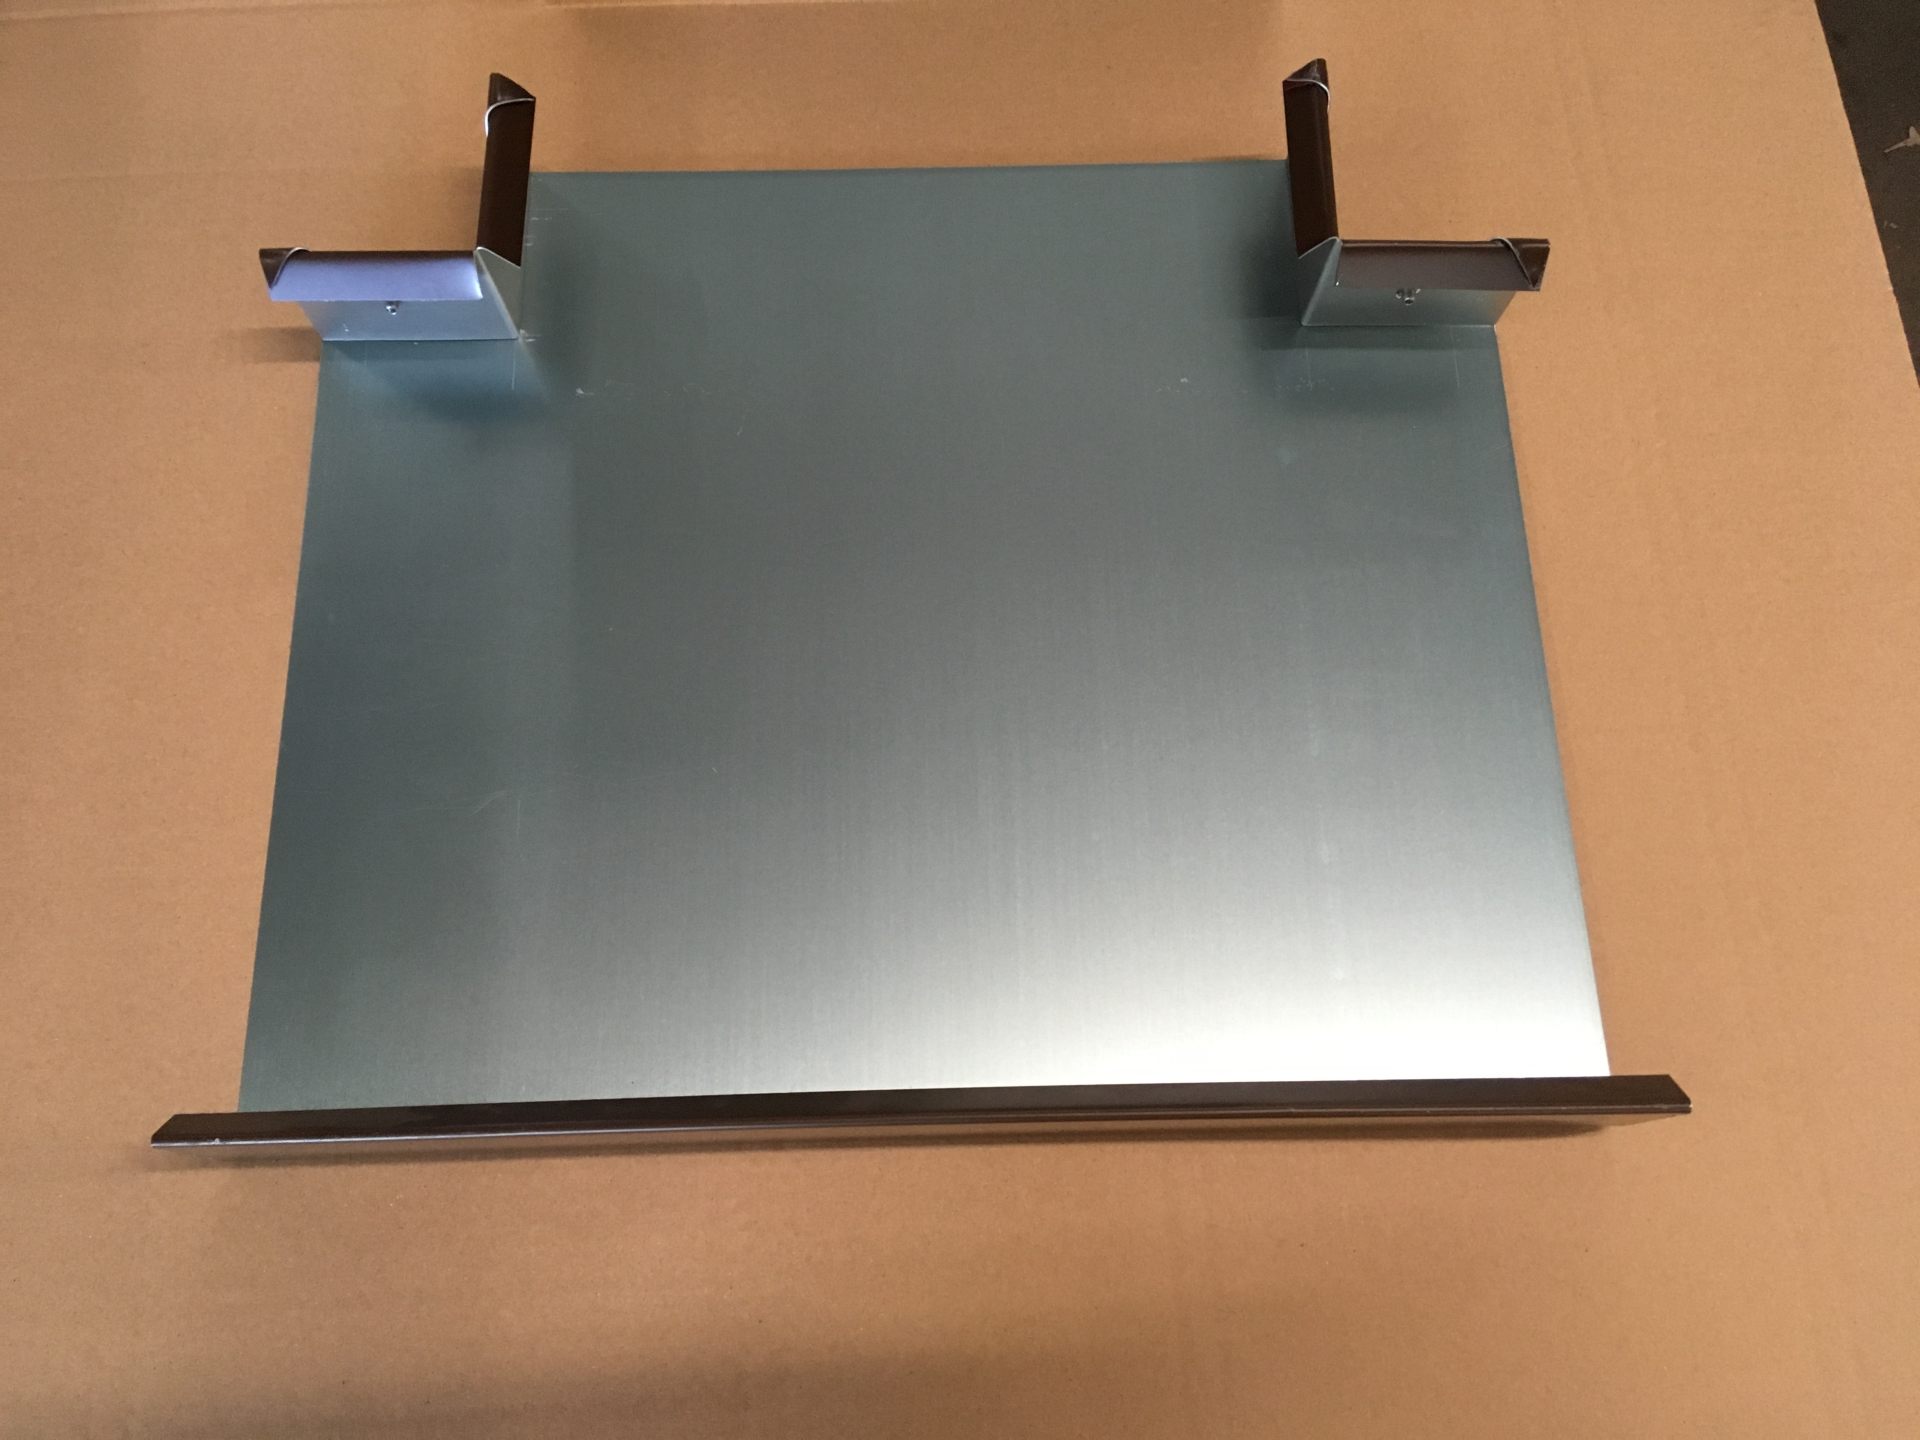 Pfeilerabdeckung und T-Stück in Aluminium braun, Abdeckungsbreite 27cm